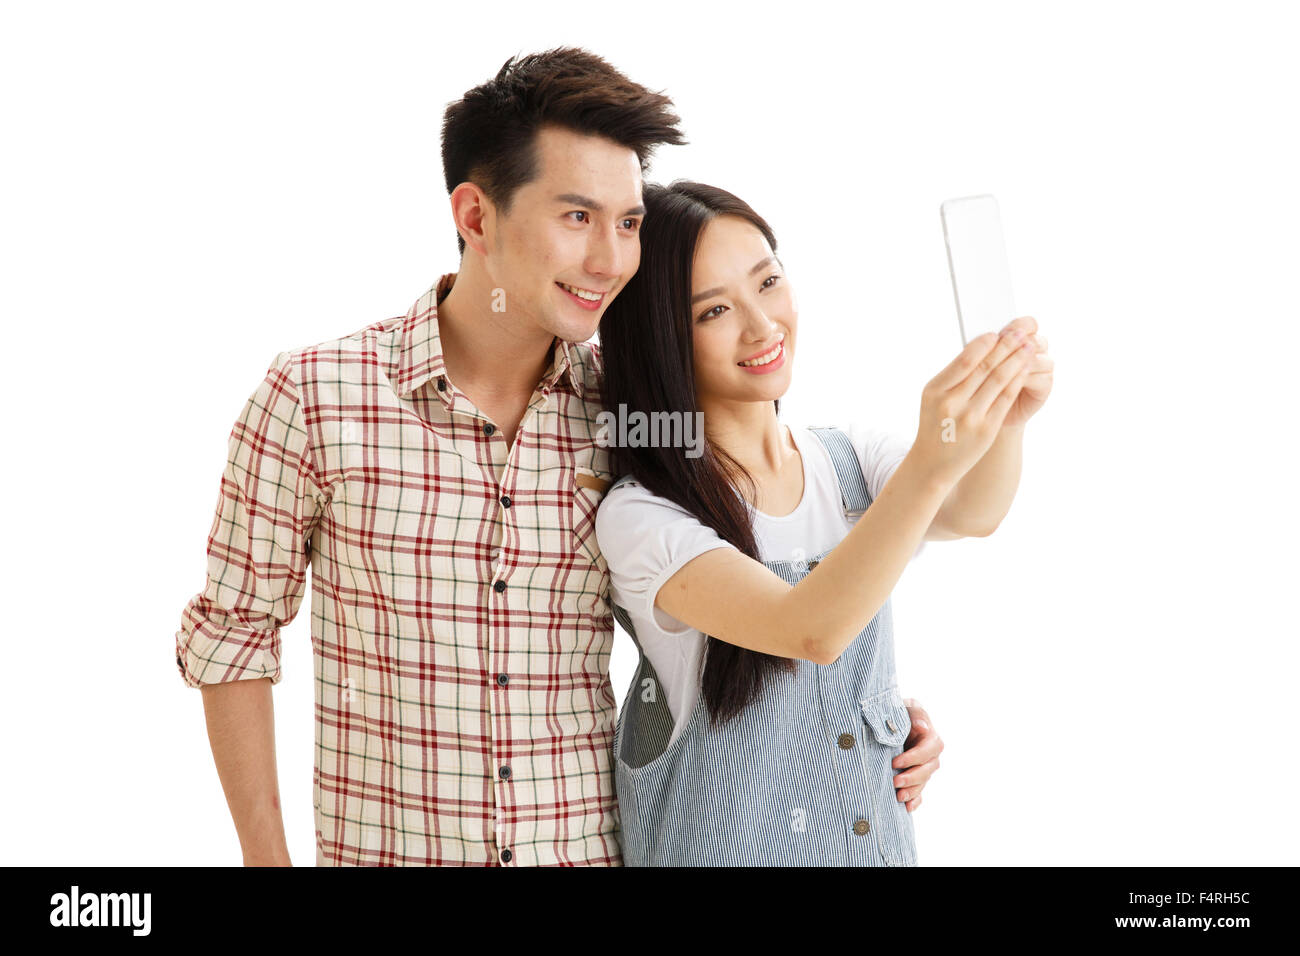 Junge Paare mit einer Handy-Kamera Stockfoto